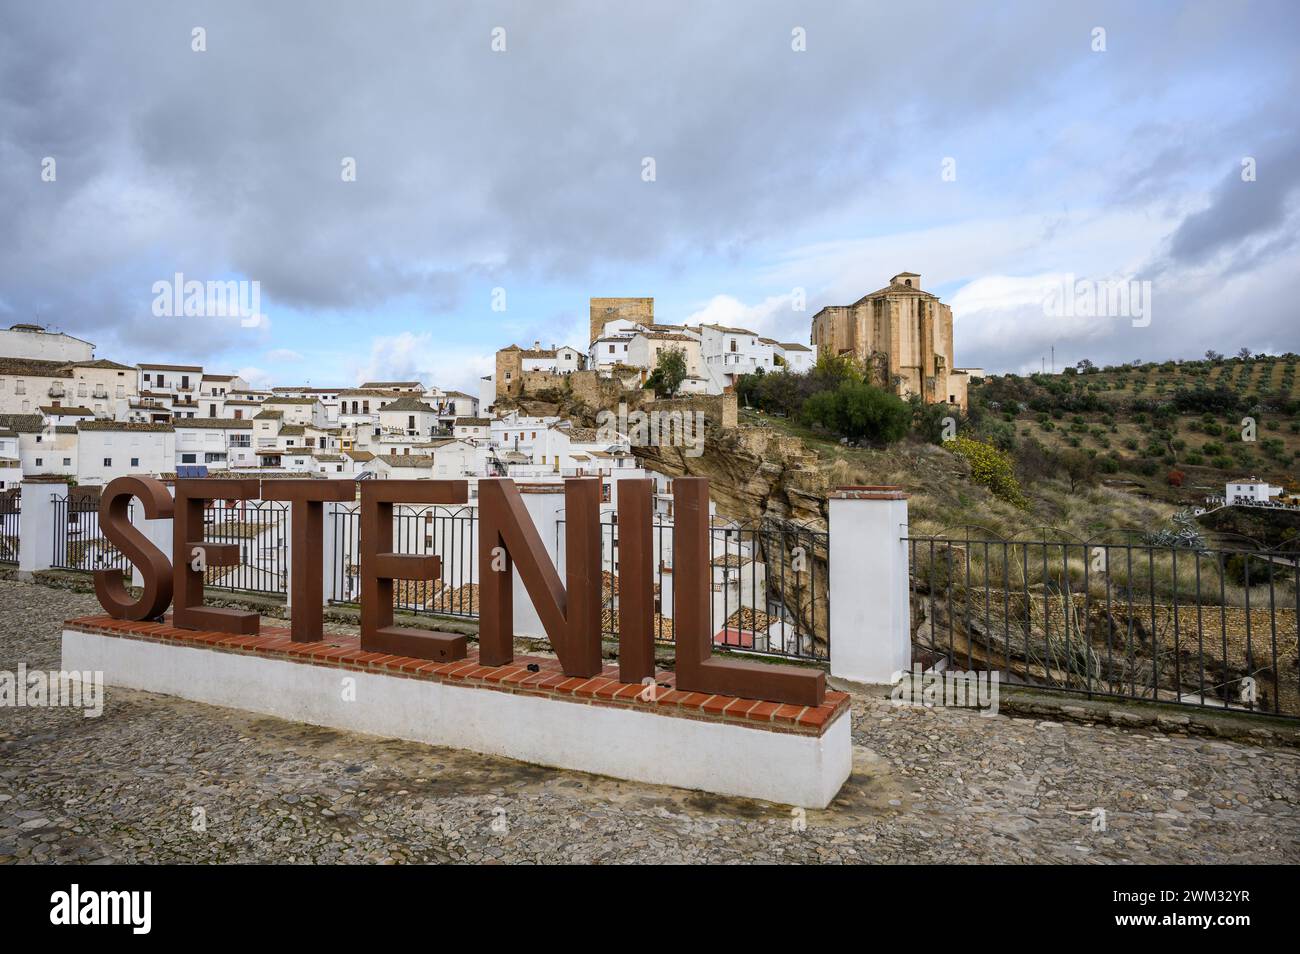 Vue panoramique sur le village Setenil de las Bodegas et son château depuis le point de vue d'El Carmen, Cadix, Espagne. Banque D'Images